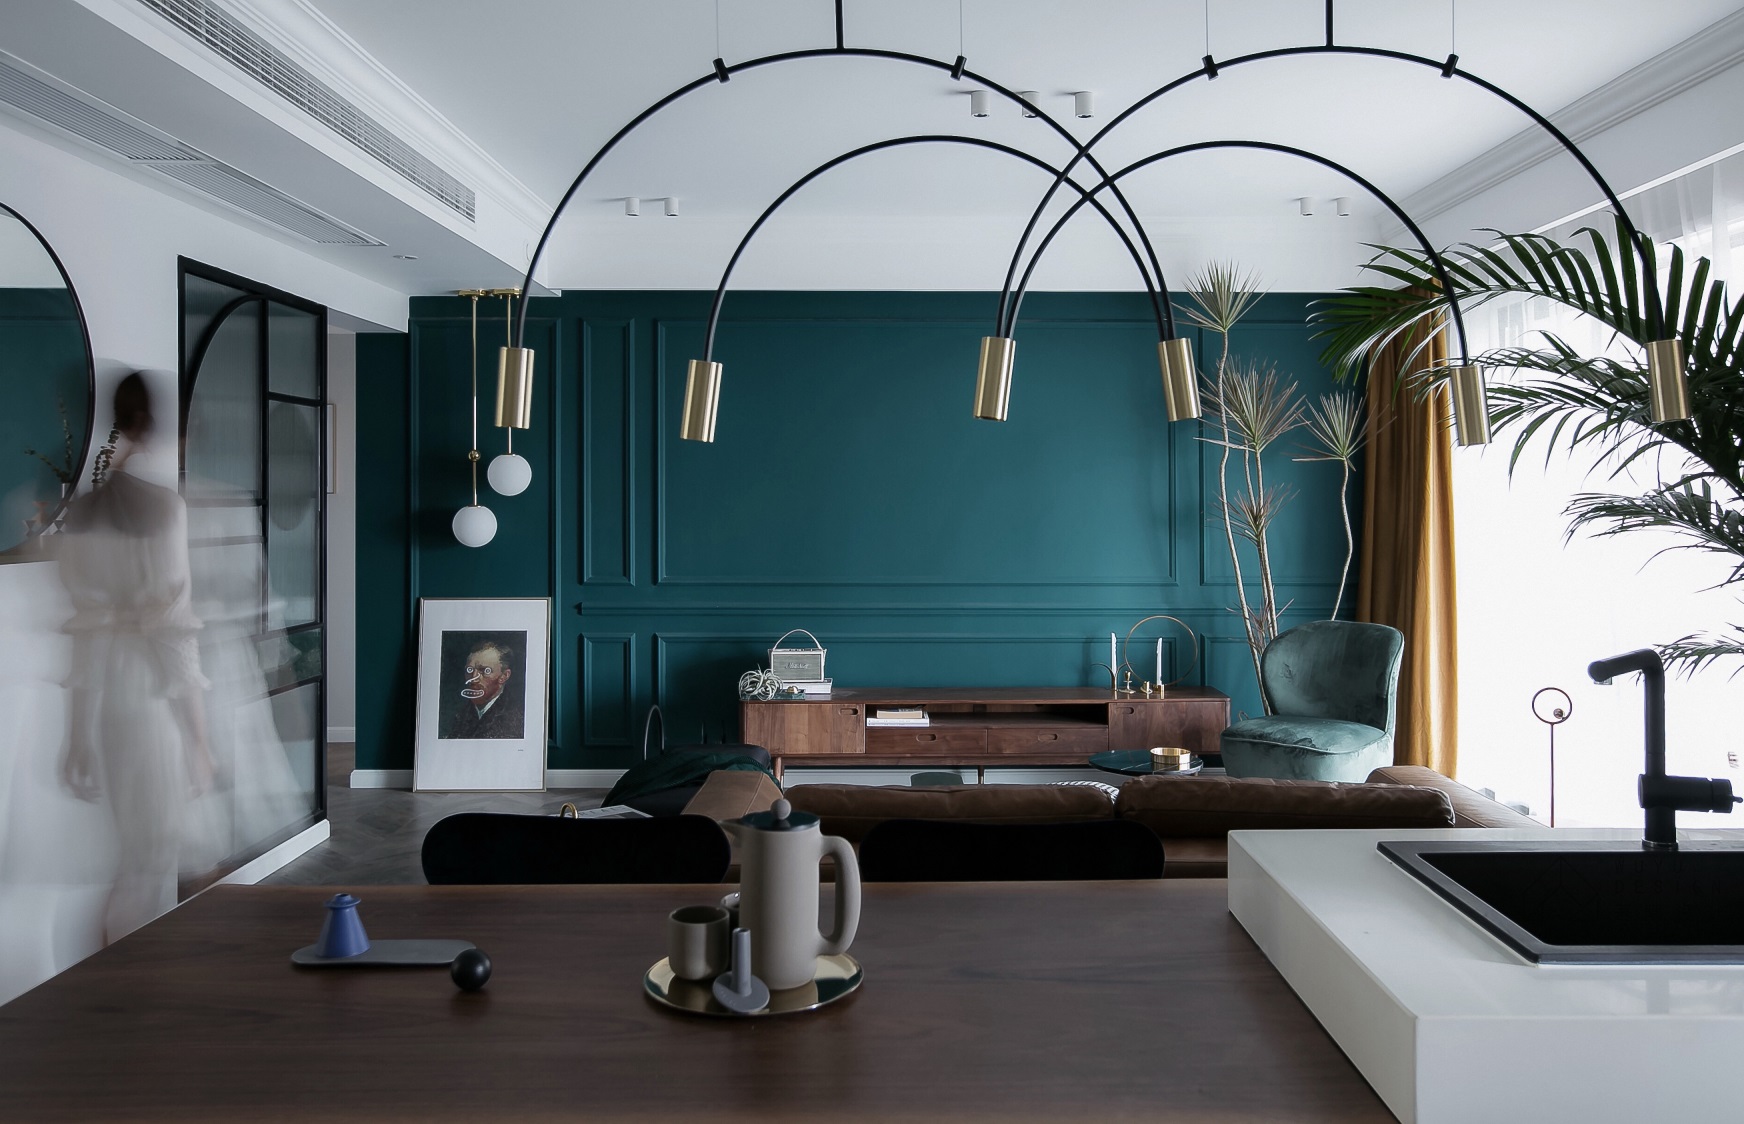 客厅背景墙以孔雀蓝为主,并配以石膏线勾勒,配以精致家具,呈现出静雅